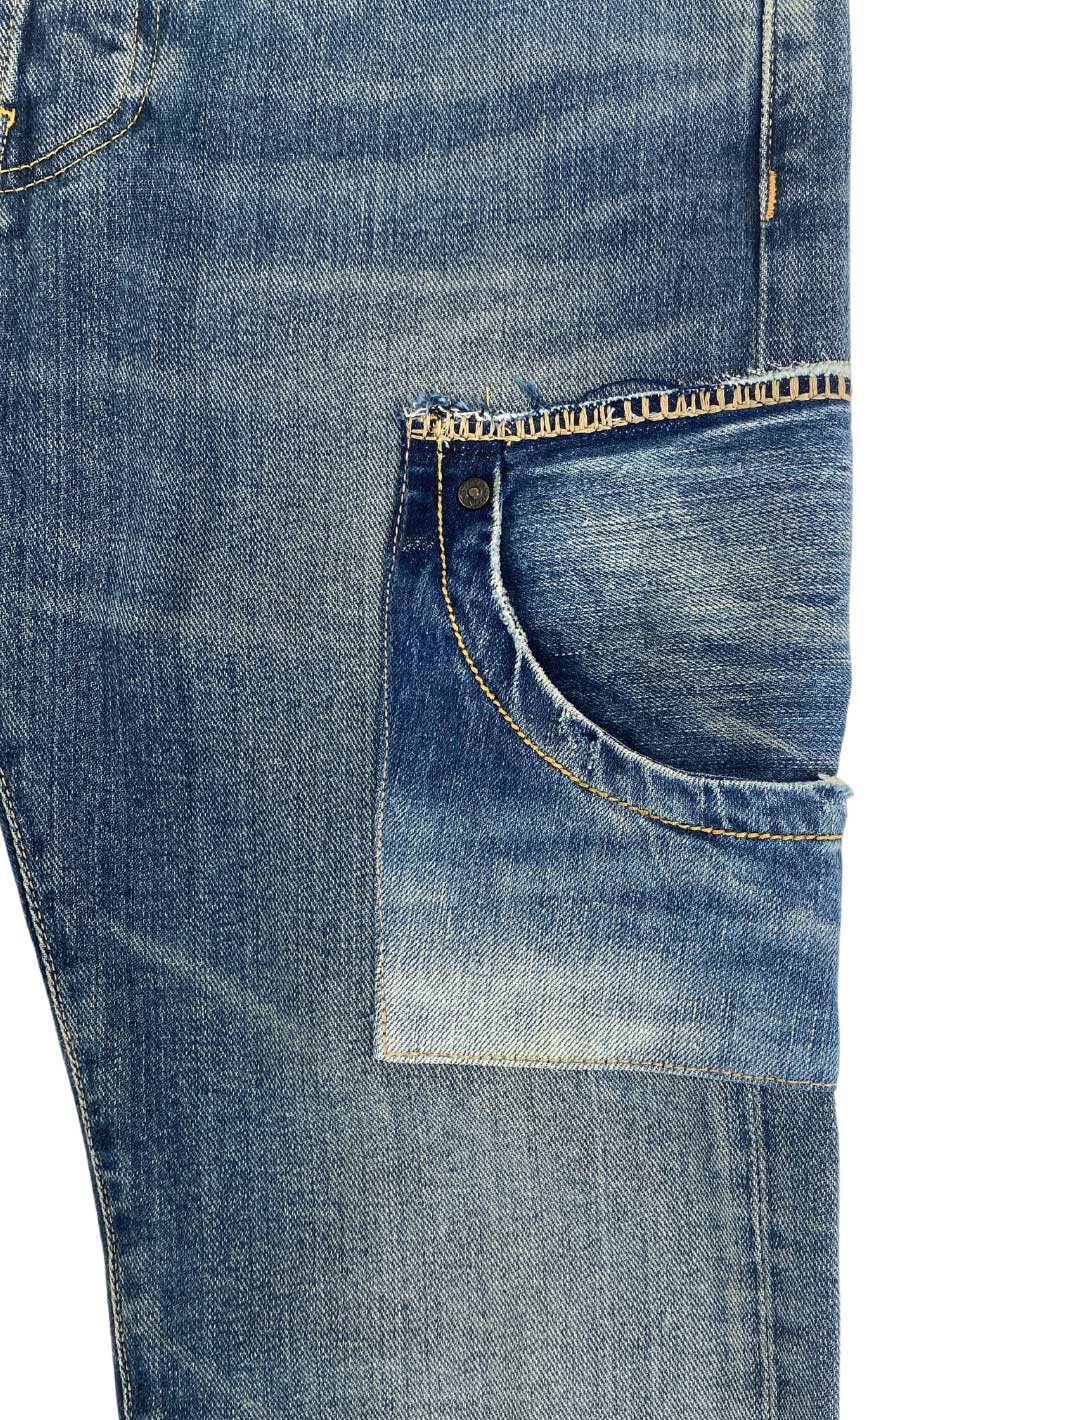 Herren Vintage Jeans Größe 30/32 aufgenähte Tasche mittelblau 100% Baumwolle Second Life WOTE